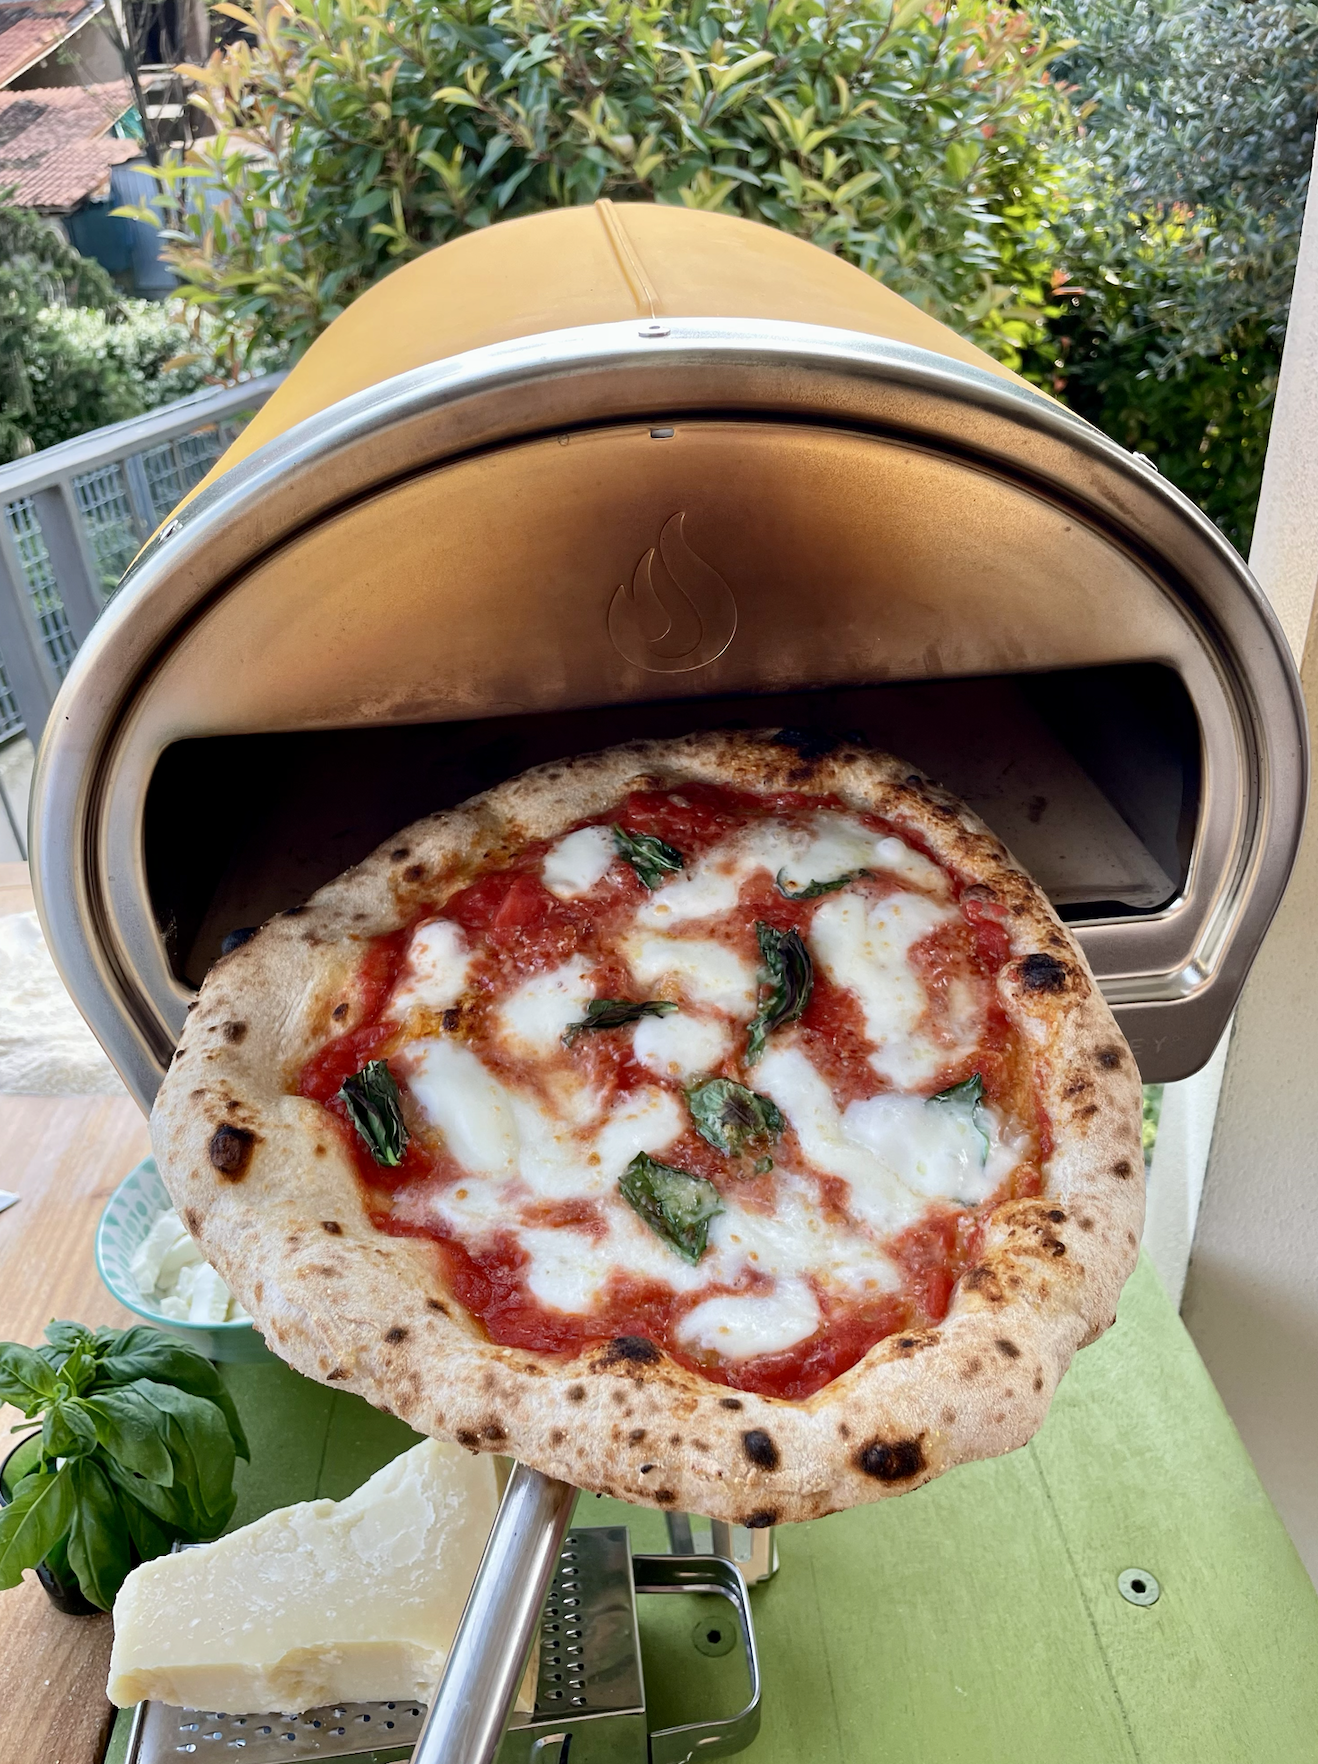 sourdough pizza expert consultant recipe creator chef andrea danelli from sri lanka england italy europe @theheartofpizza on instagram social media 8